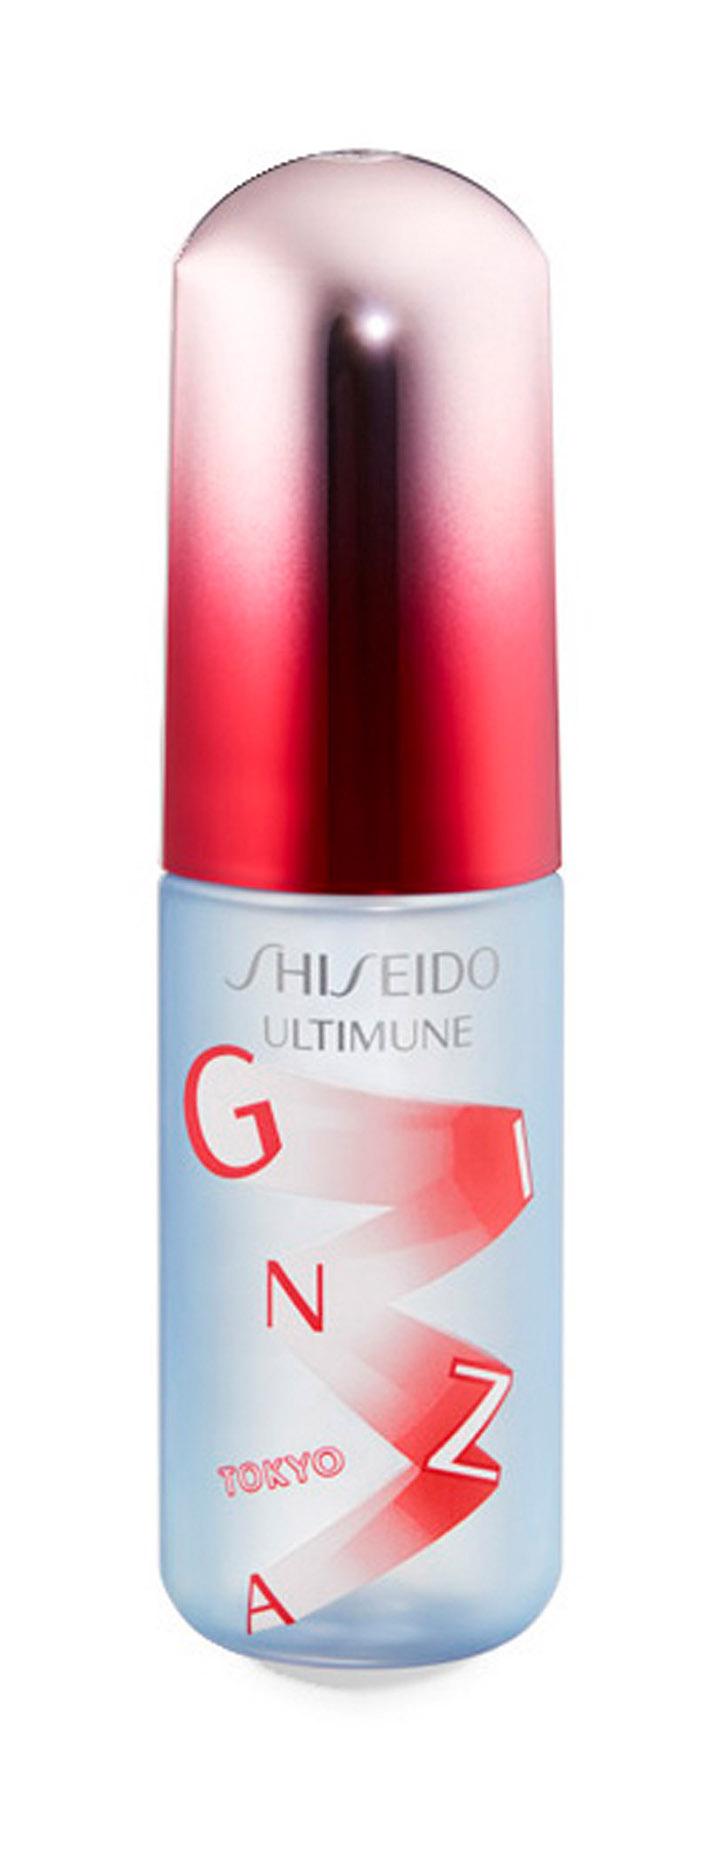 Освежающий мист для лица Shiseido Ultimune Defense Refresh Mist Duo защитный, 60 мл beardburys набор для лица multiactive 24h facial elixir hydra refresh facial mist after shave